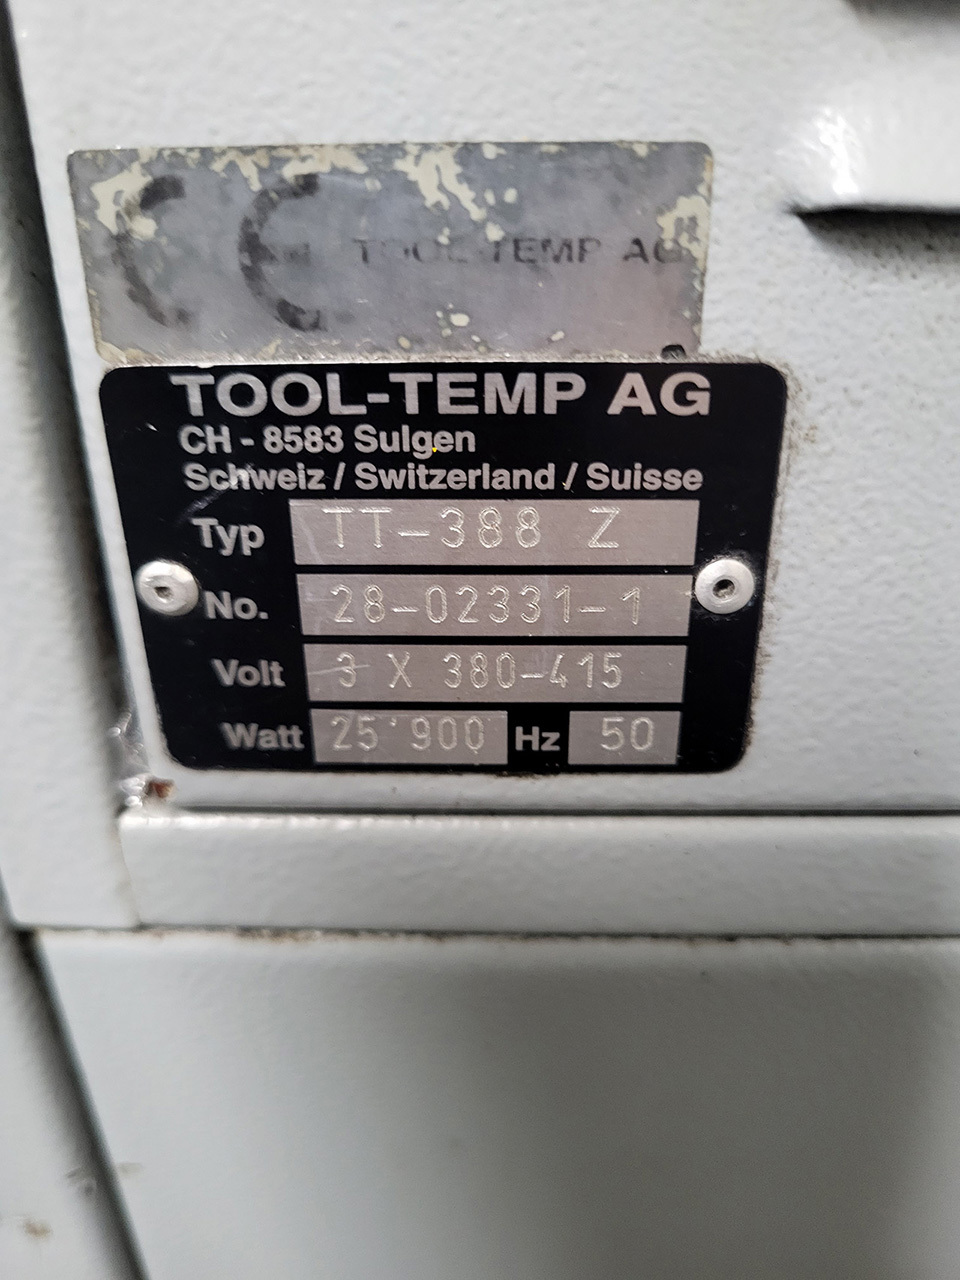 Unità di controllo della temperatura ToolTemp TT-388 ZU2230, usata